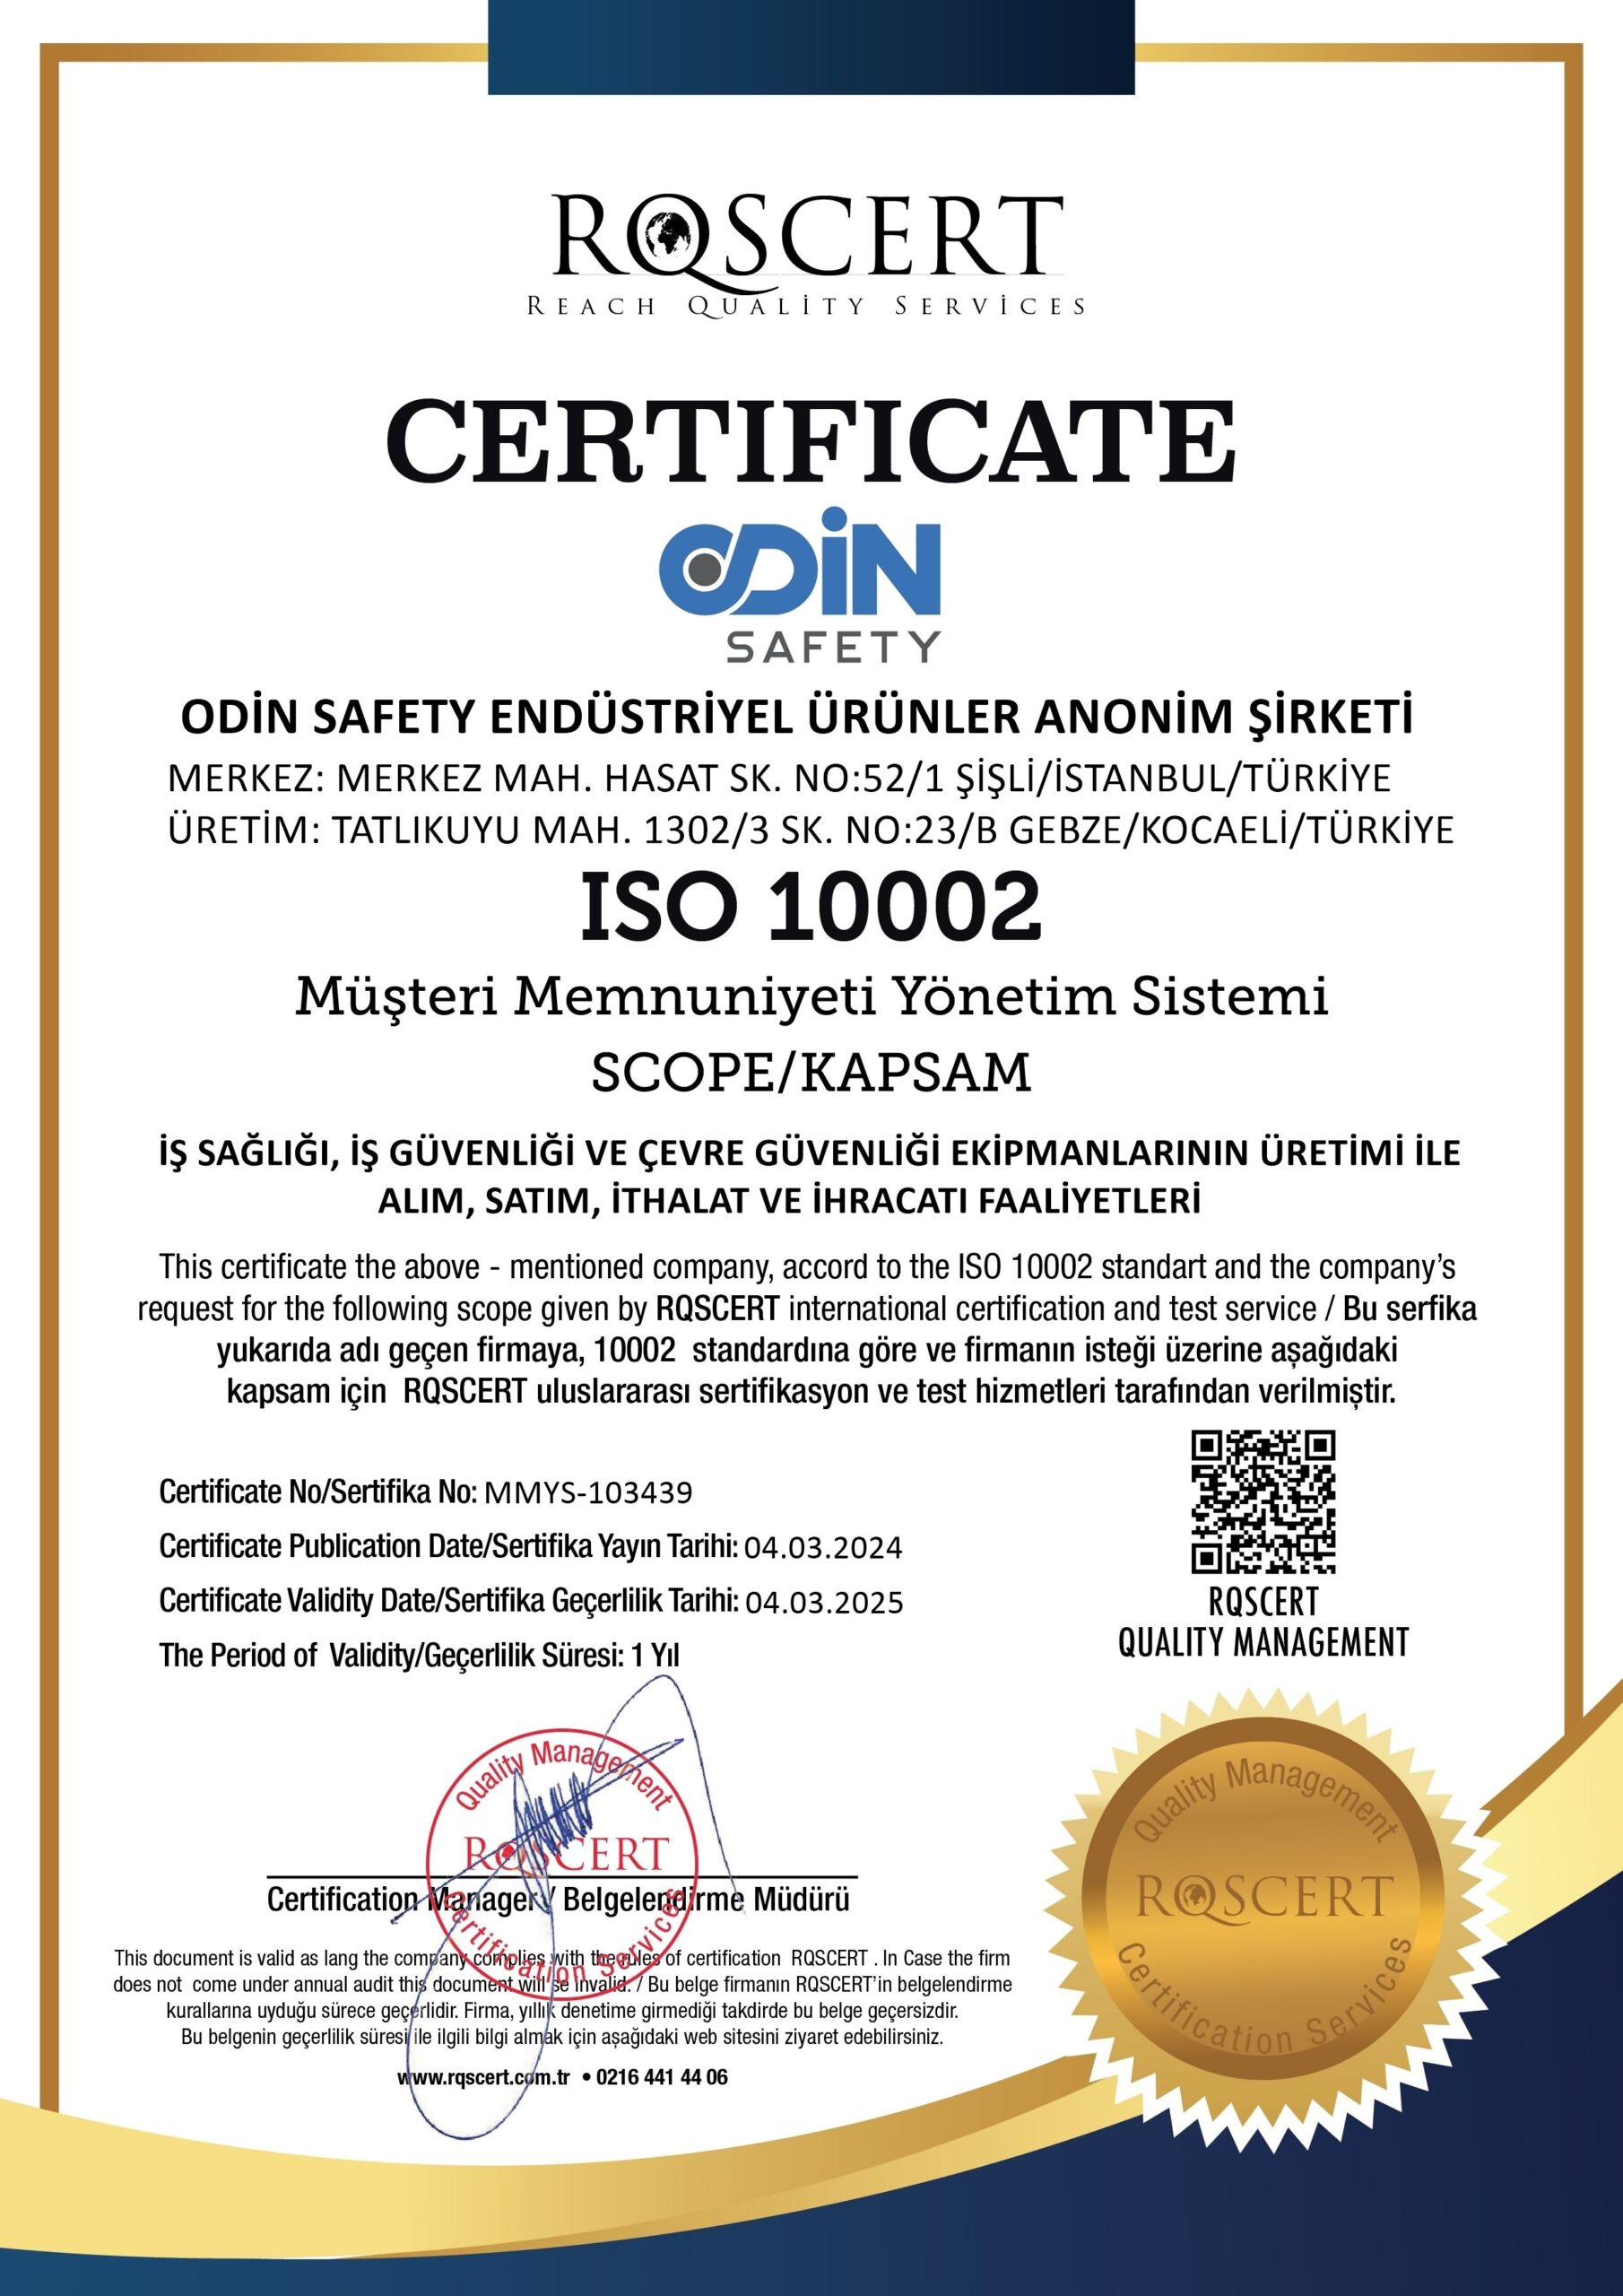 ODİN SAFETY ISO 10002